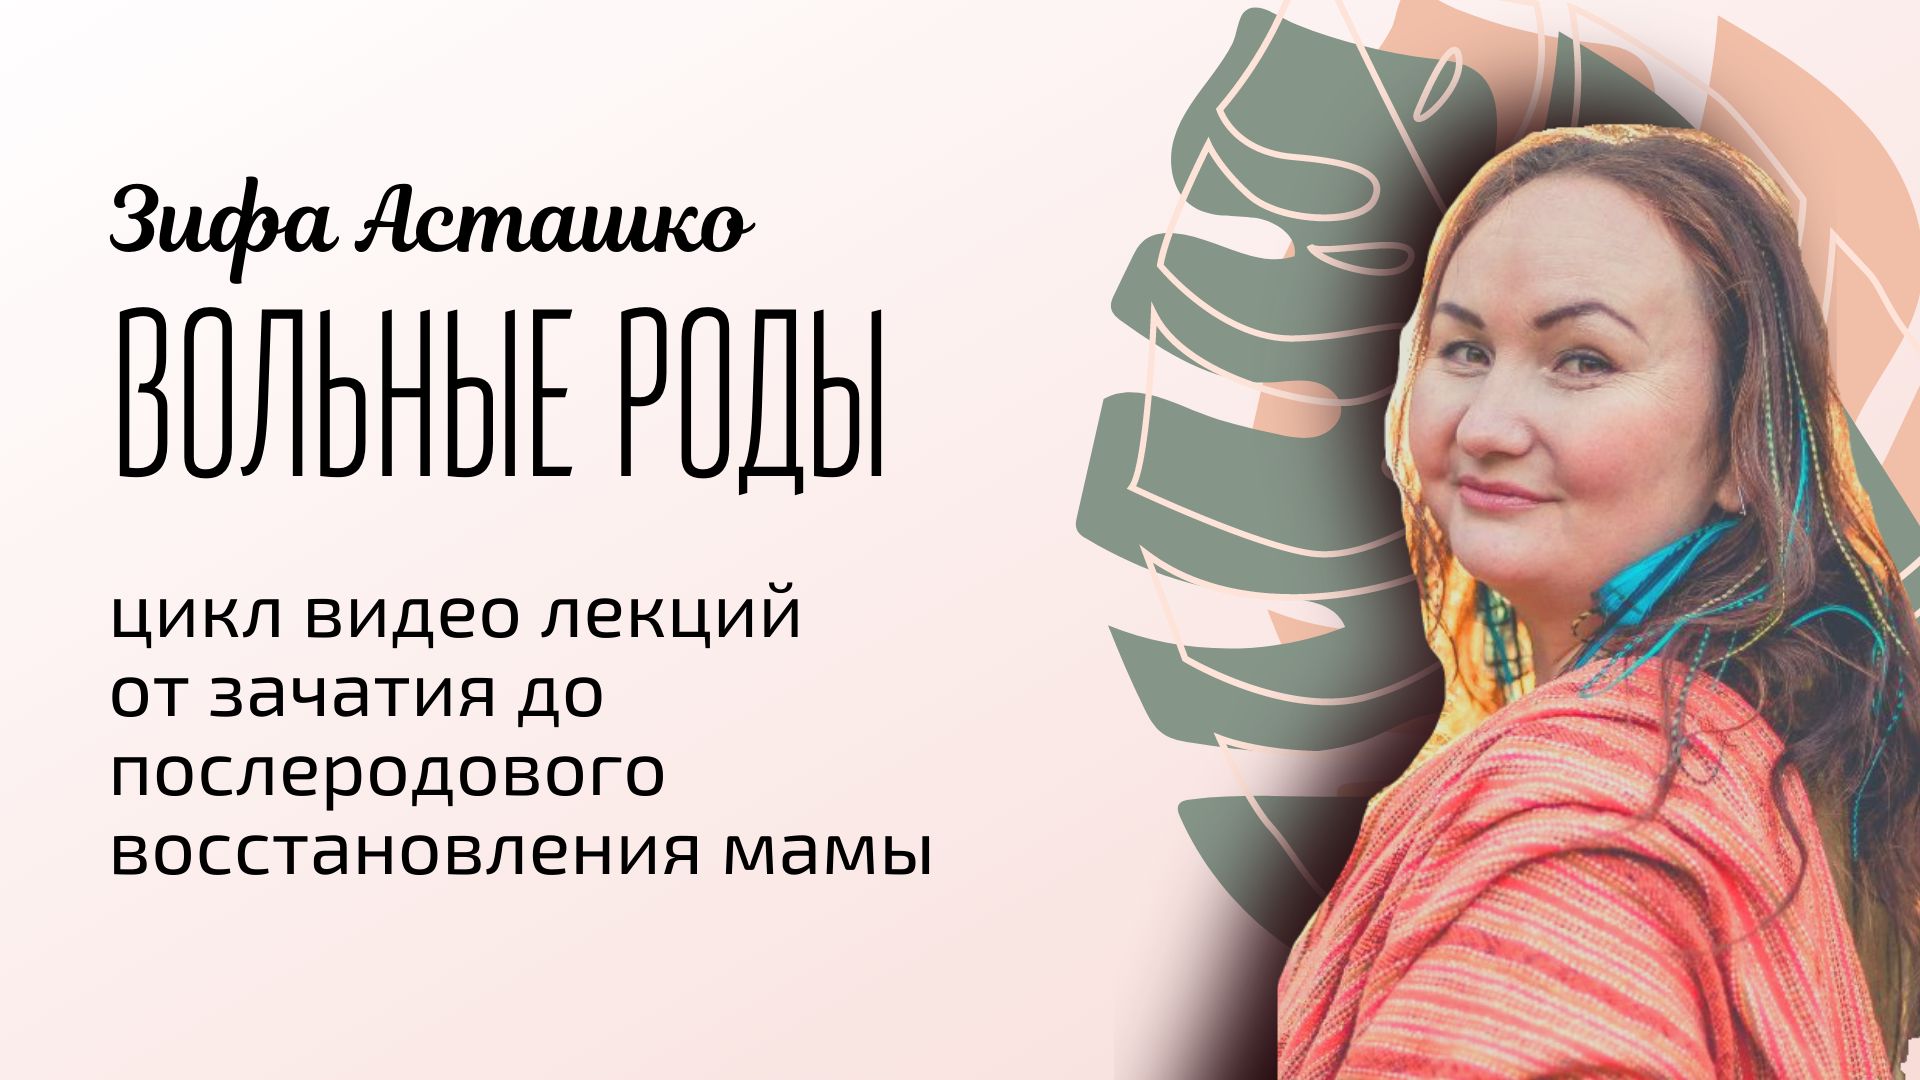 Как сделать глубокую эпиляцию бикини легко и без боли? — Блог «Подружки» в Москве